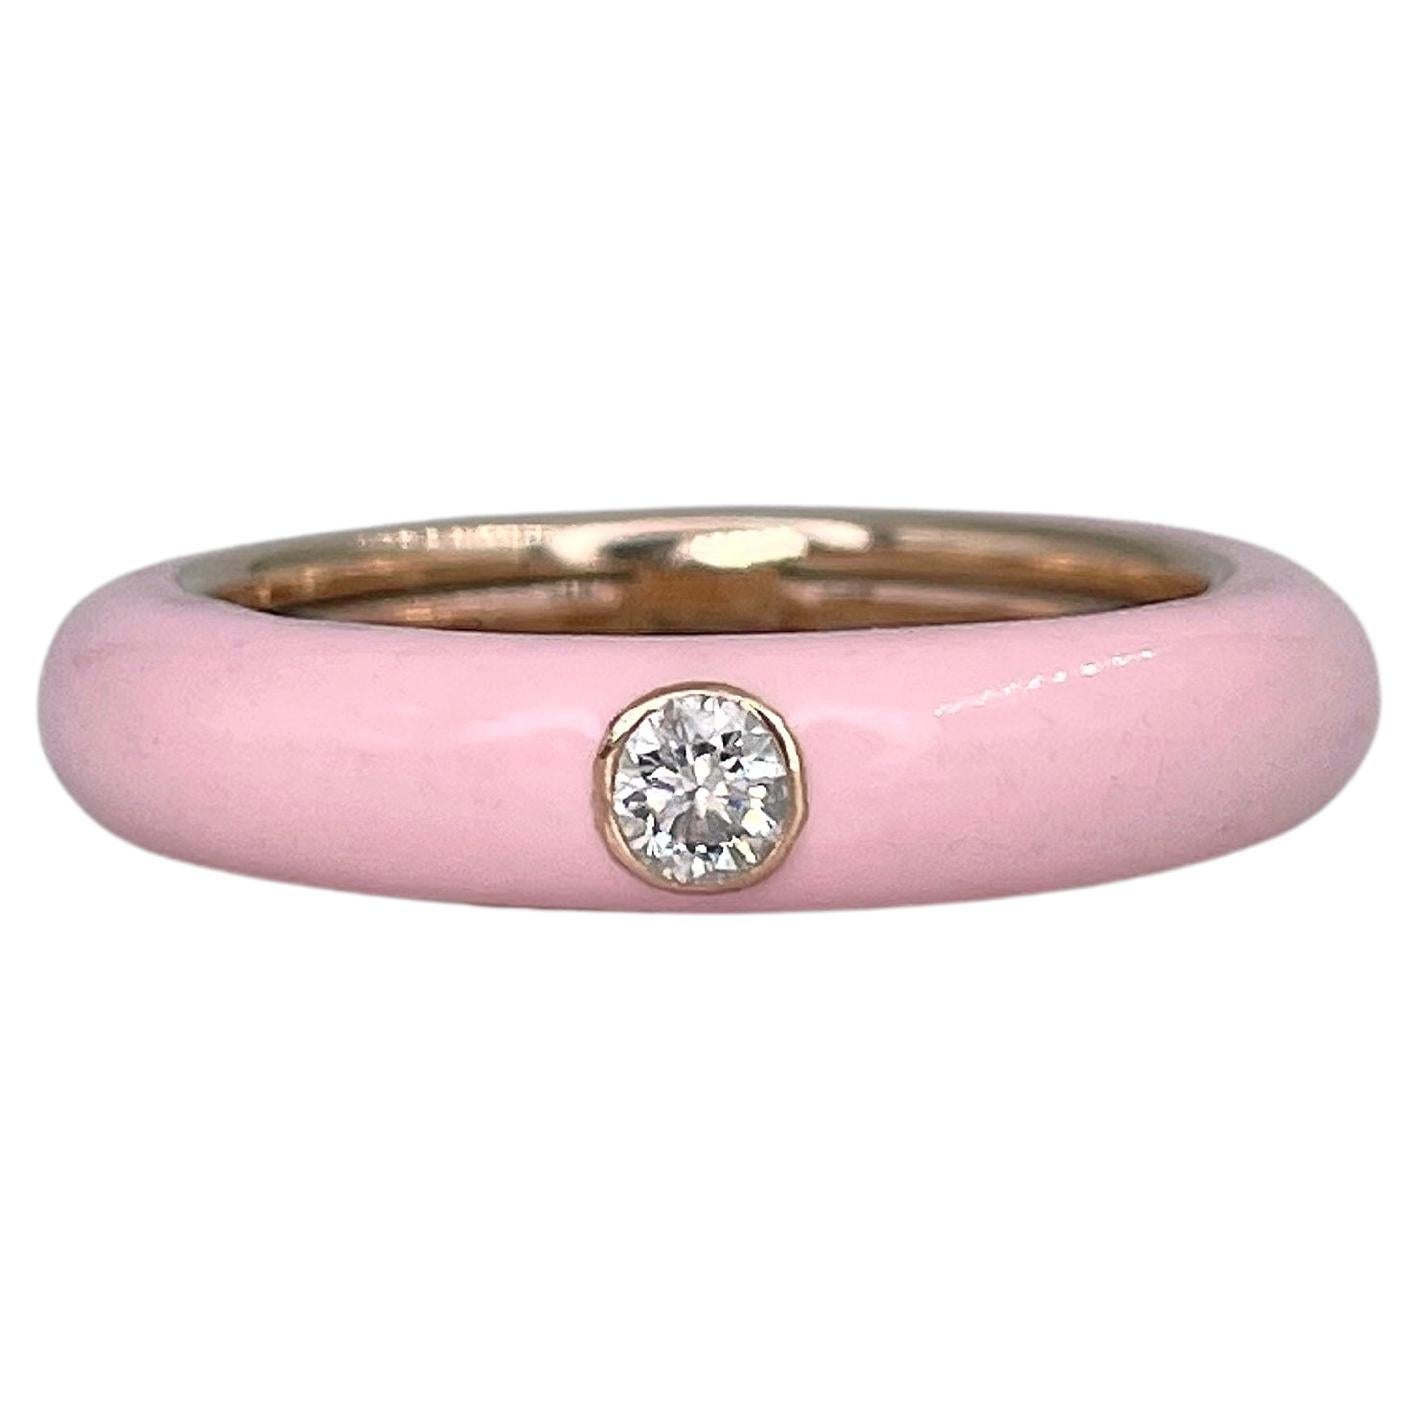 Adolfo Courrier 18 Karat Gold Light Pink Enamel Diamond Band Ring